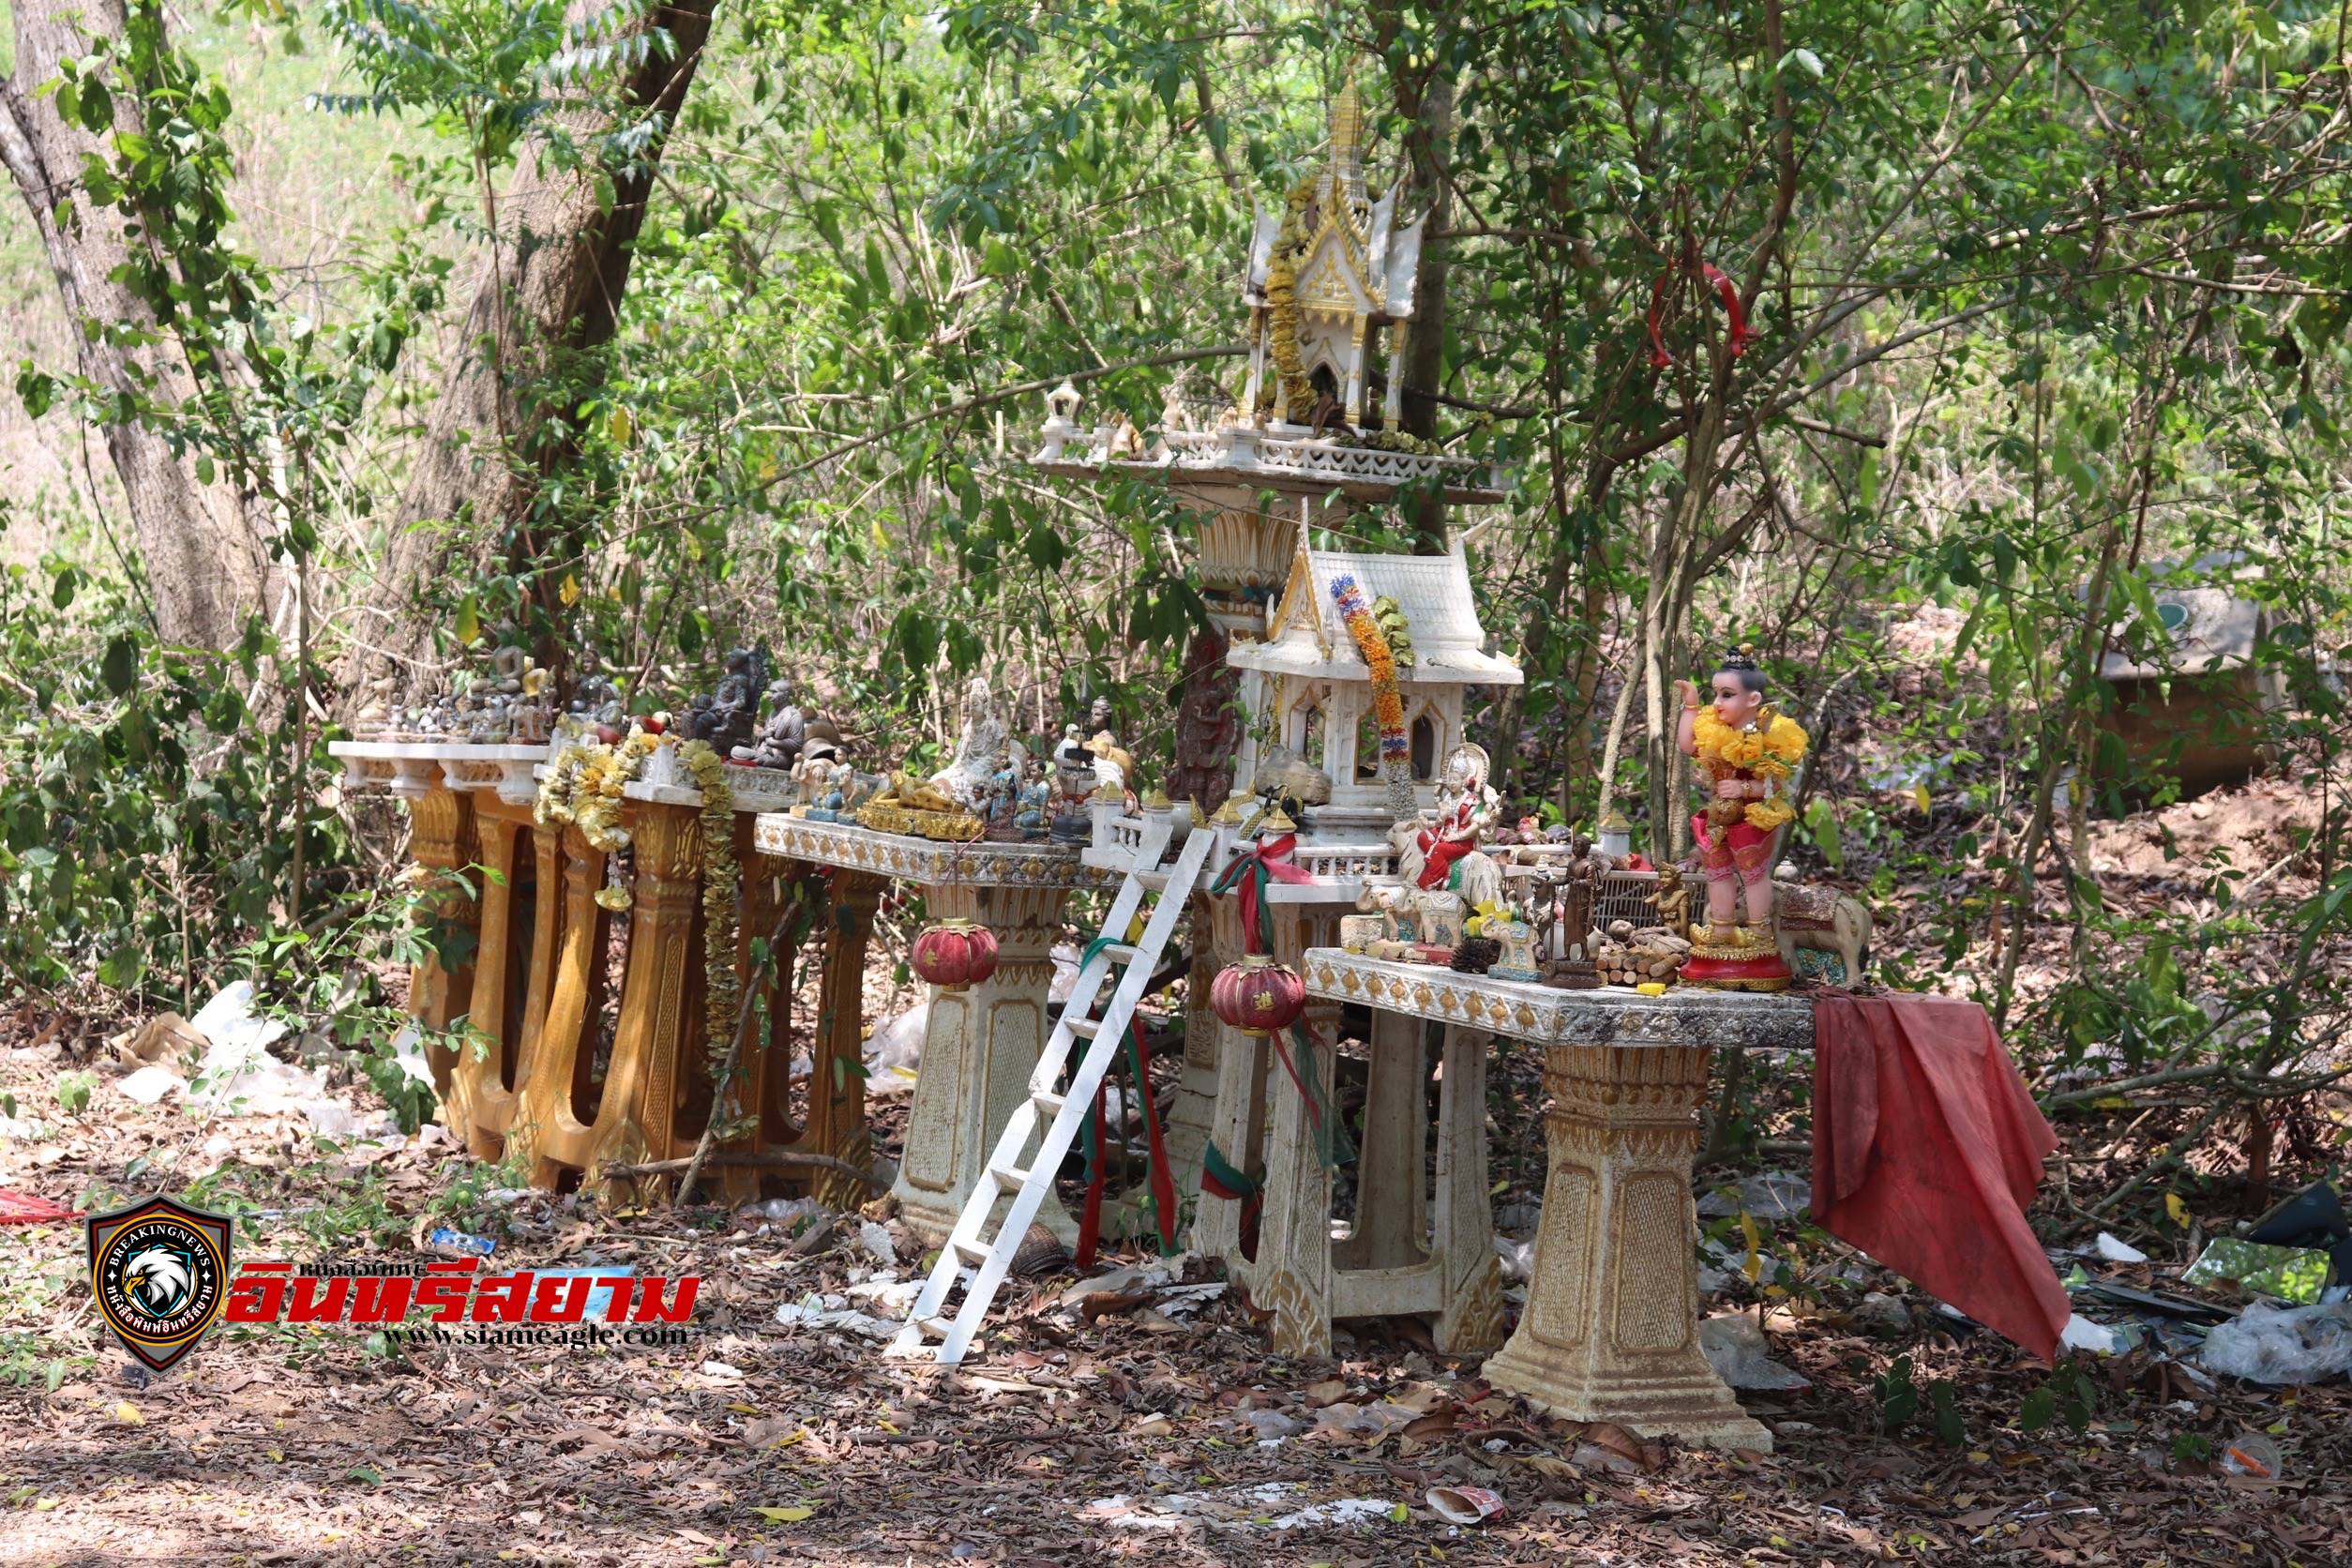 ชลบุรี-พบสุสาน ศาลพระภูมิเก่ากลางป่า ขยะกองโตส่งกลิ่นเหม็นเน่า